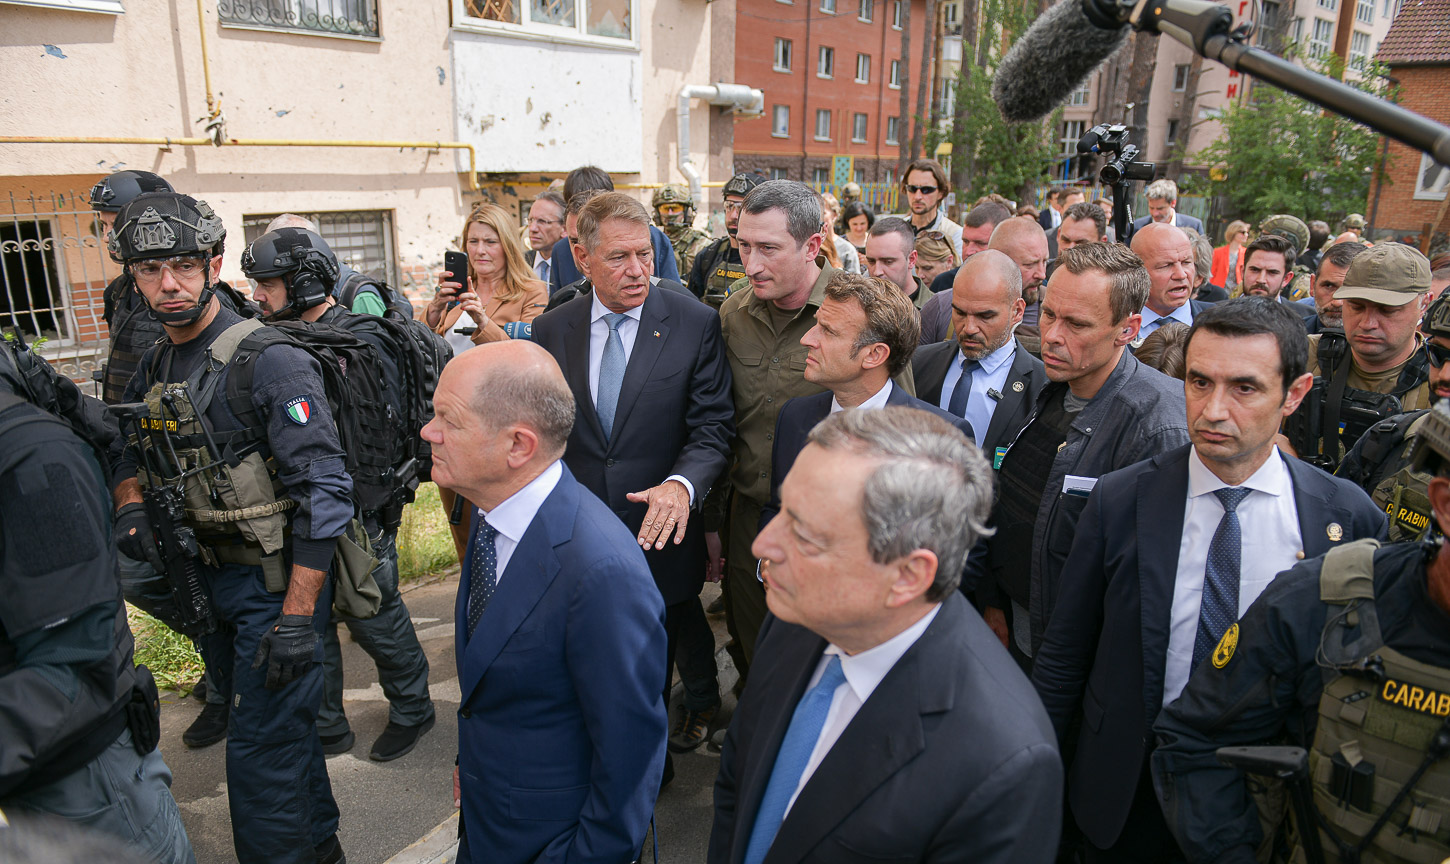 Europe’s leaders visit Kyiv: Emerging Europe this week